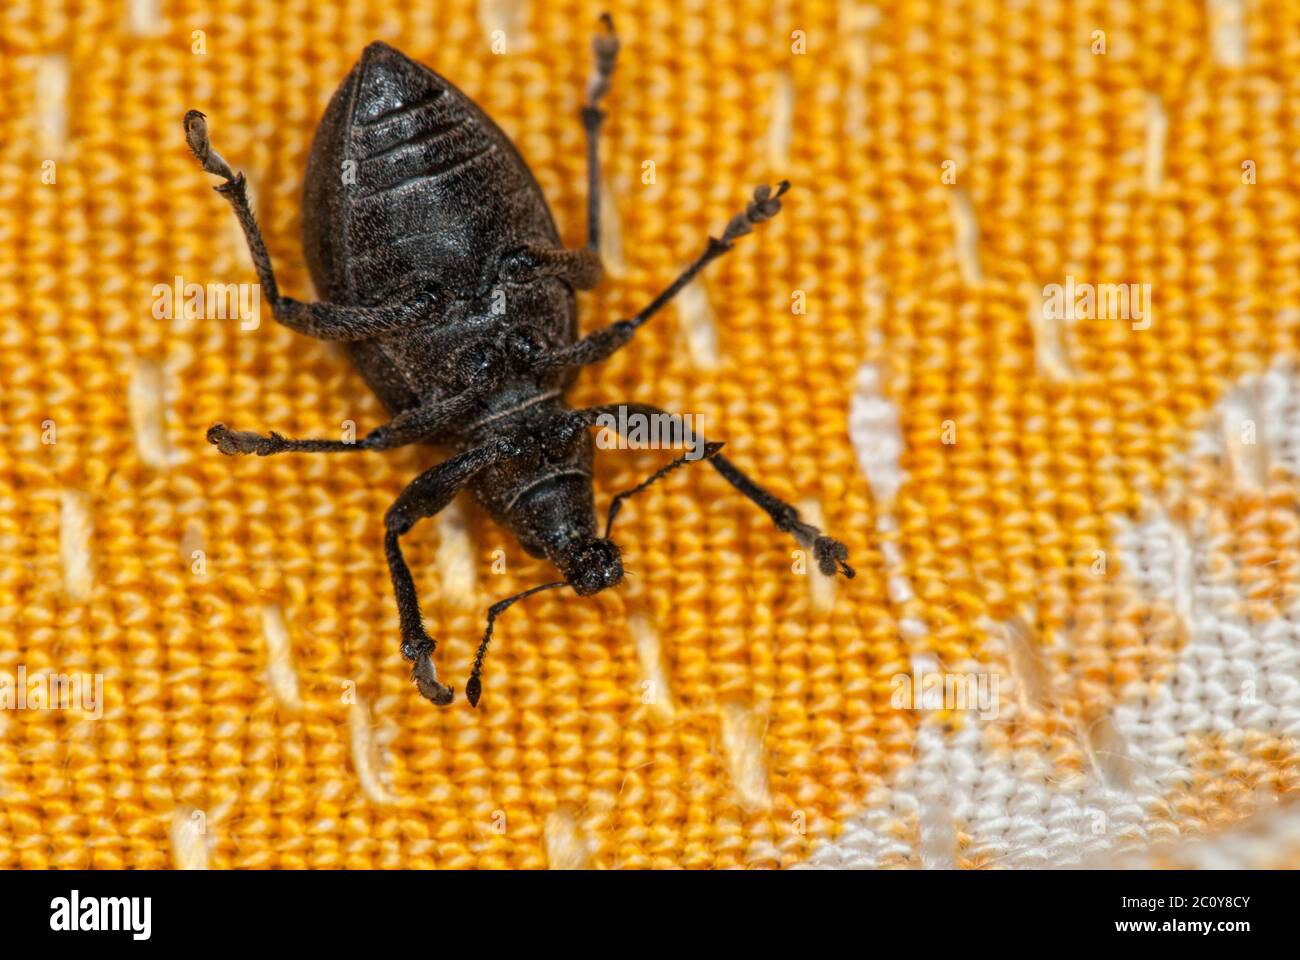 Curculione bug sul suo dorso in tela arancione suggerendo la morte o impotenza Foto Stock